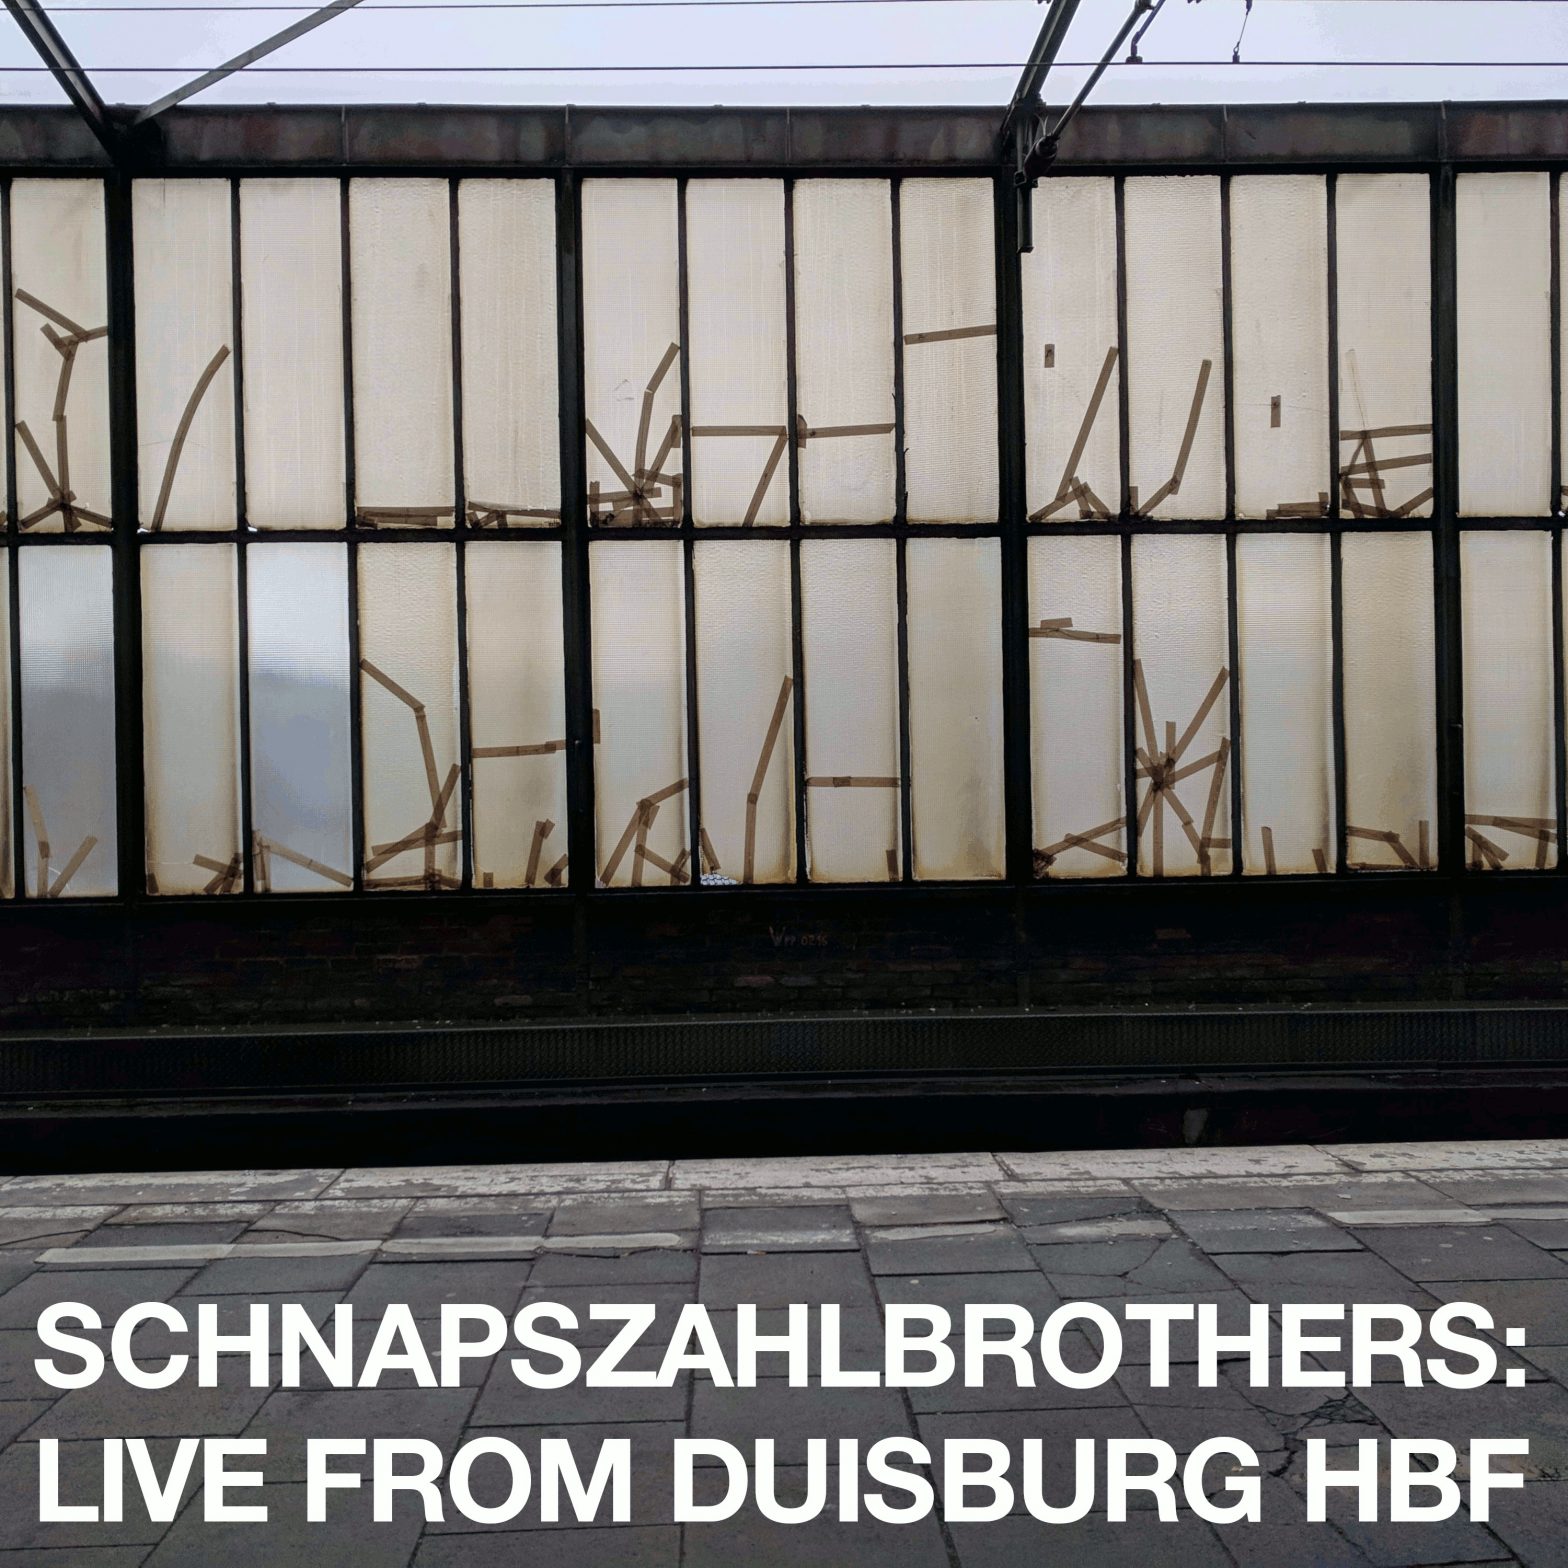 Eine schmutzige Bahnhofshallenwand. Aufschrift: Schnapszahlbrothers: Live from Duisburg Hbf